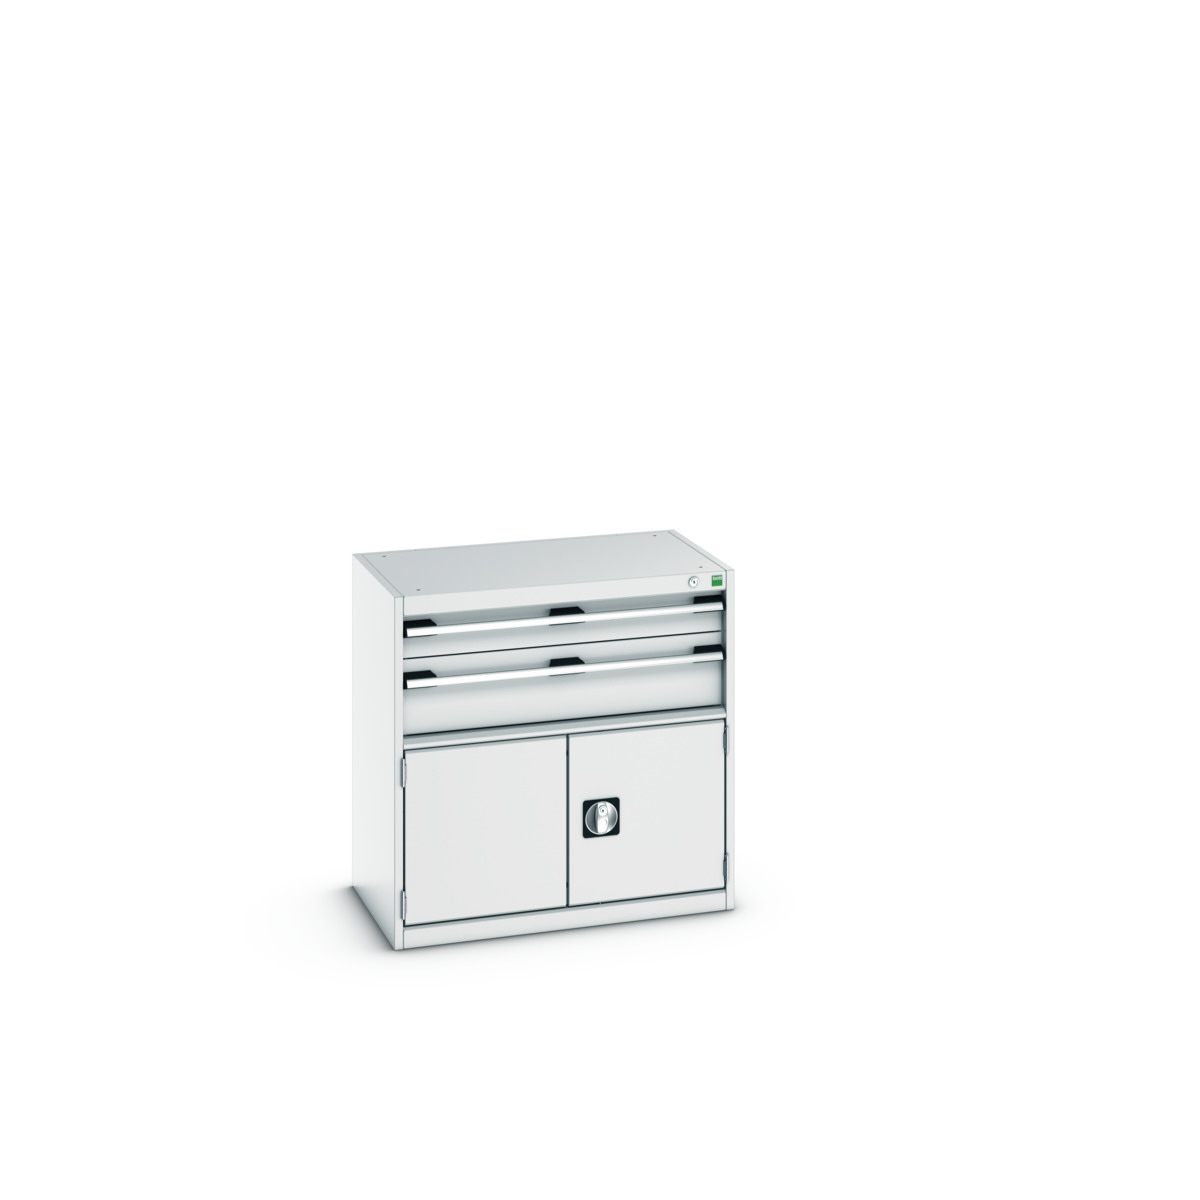 40012013.16V - cubio drawer-door cabinet